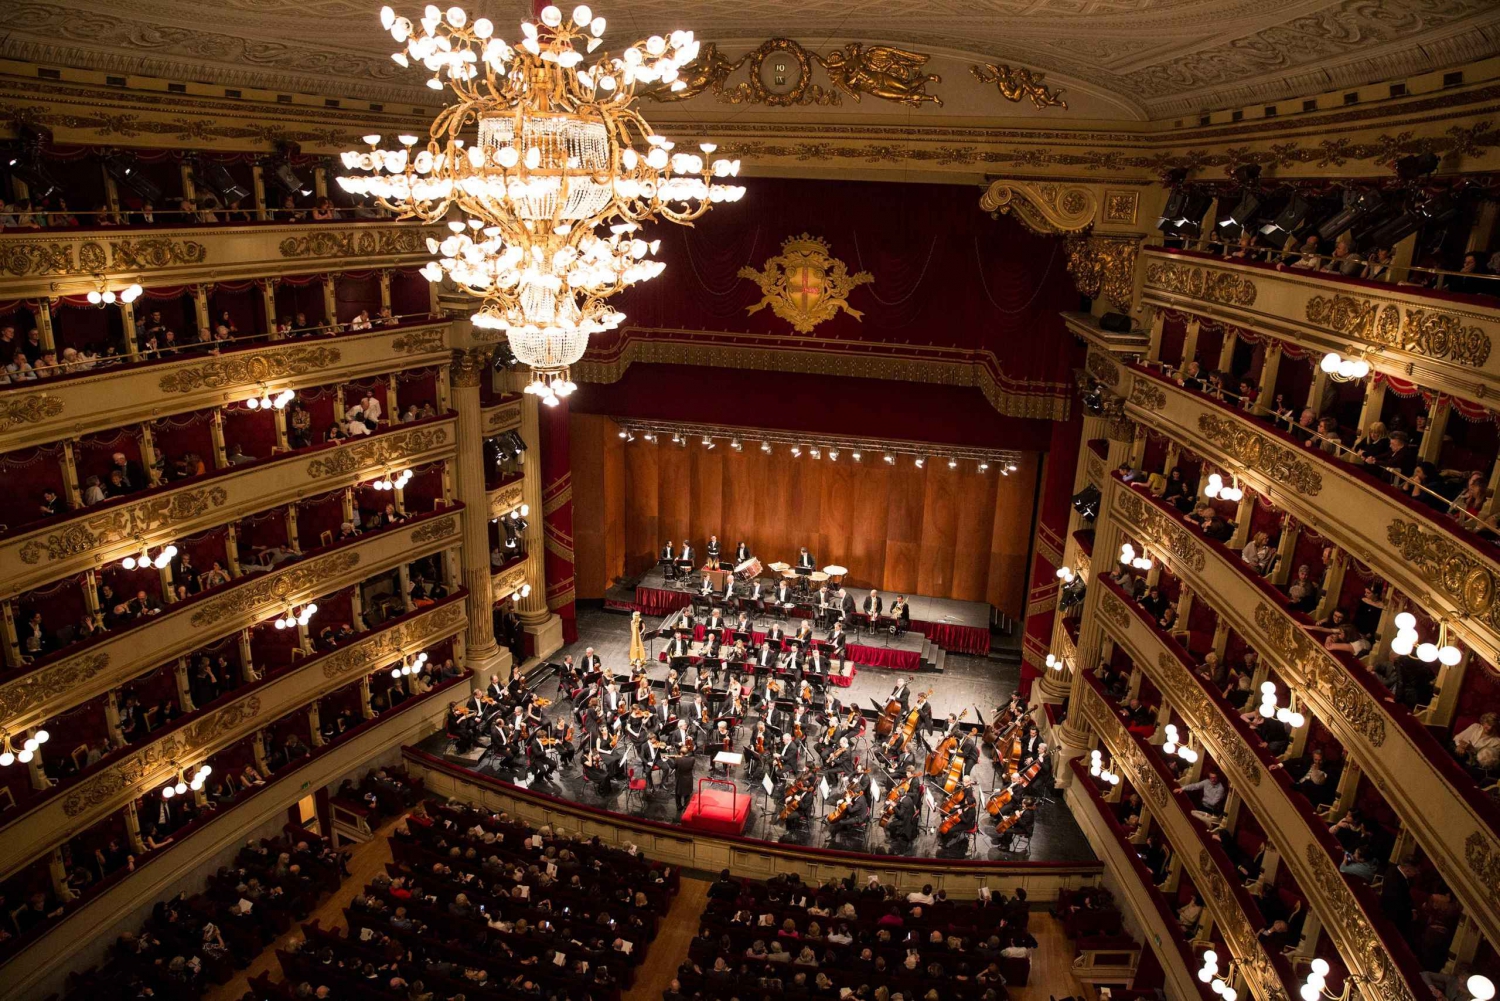 Explore La Scala Theatre